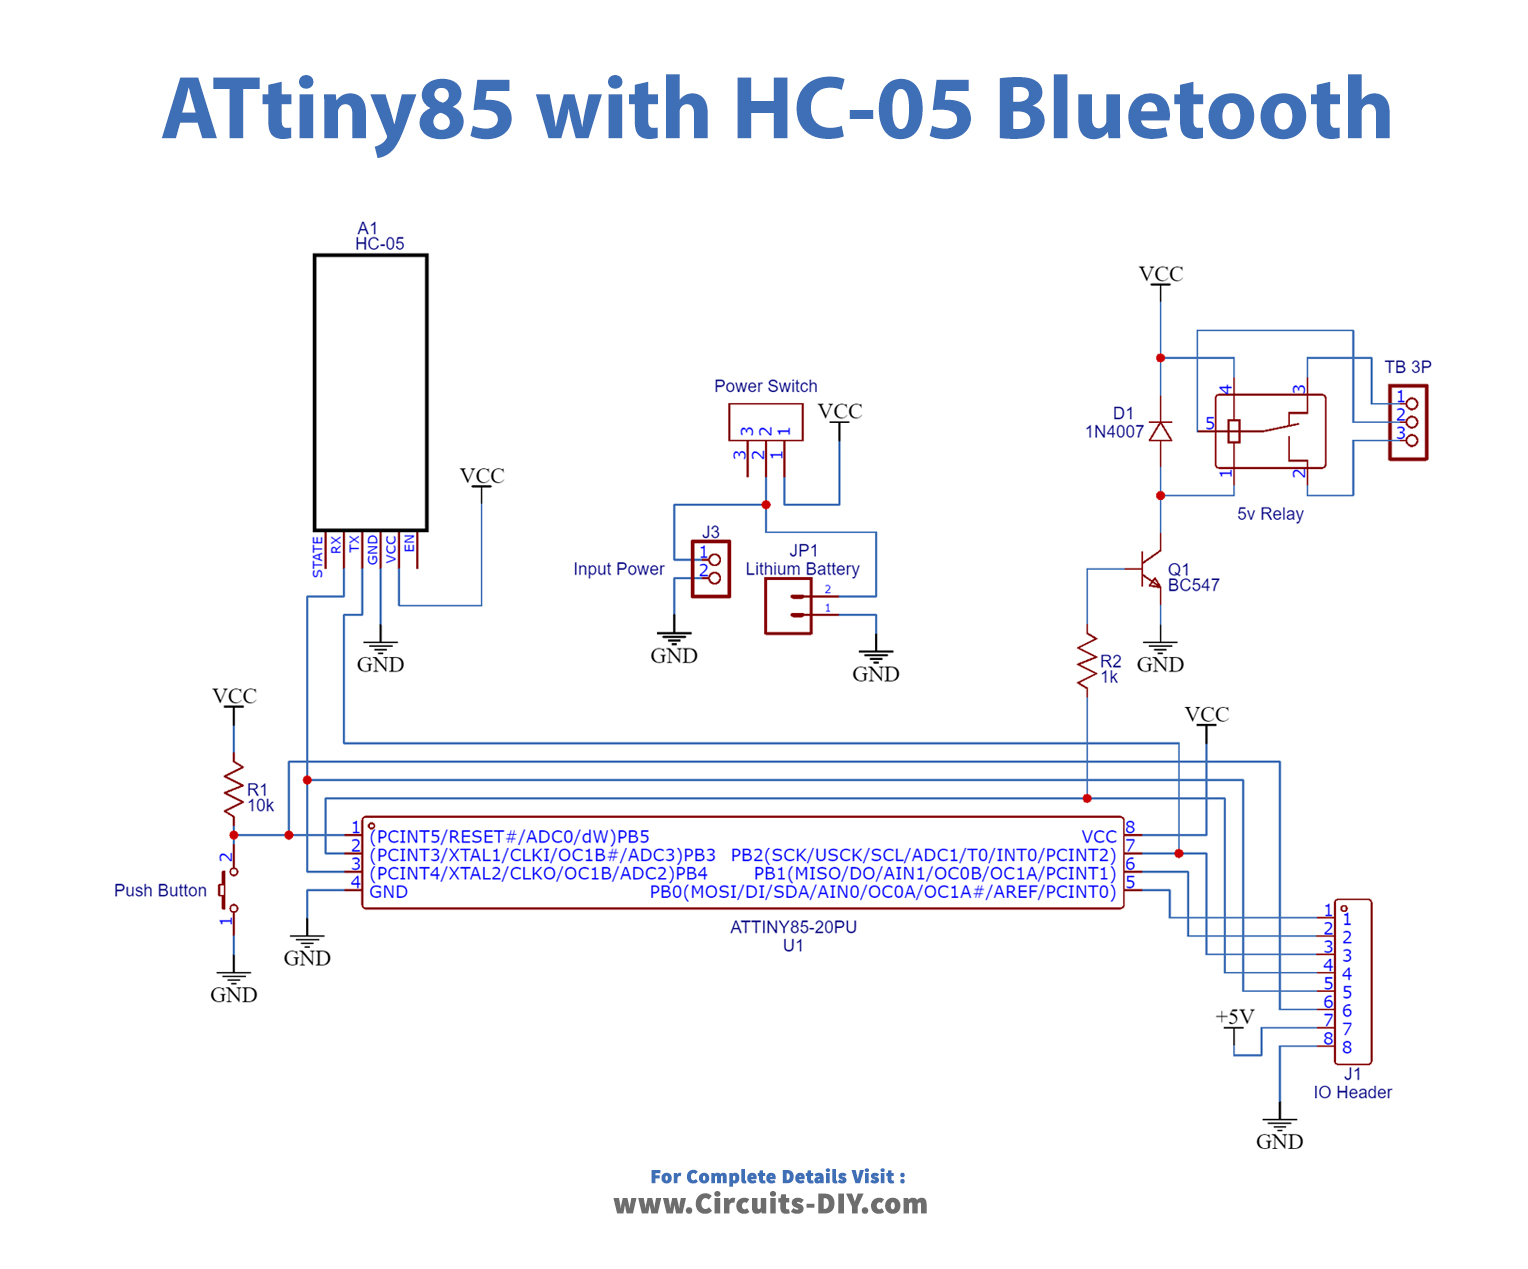 attiny85-bluetooth-hc-05-device-control-smart-phone-circuit.jpg